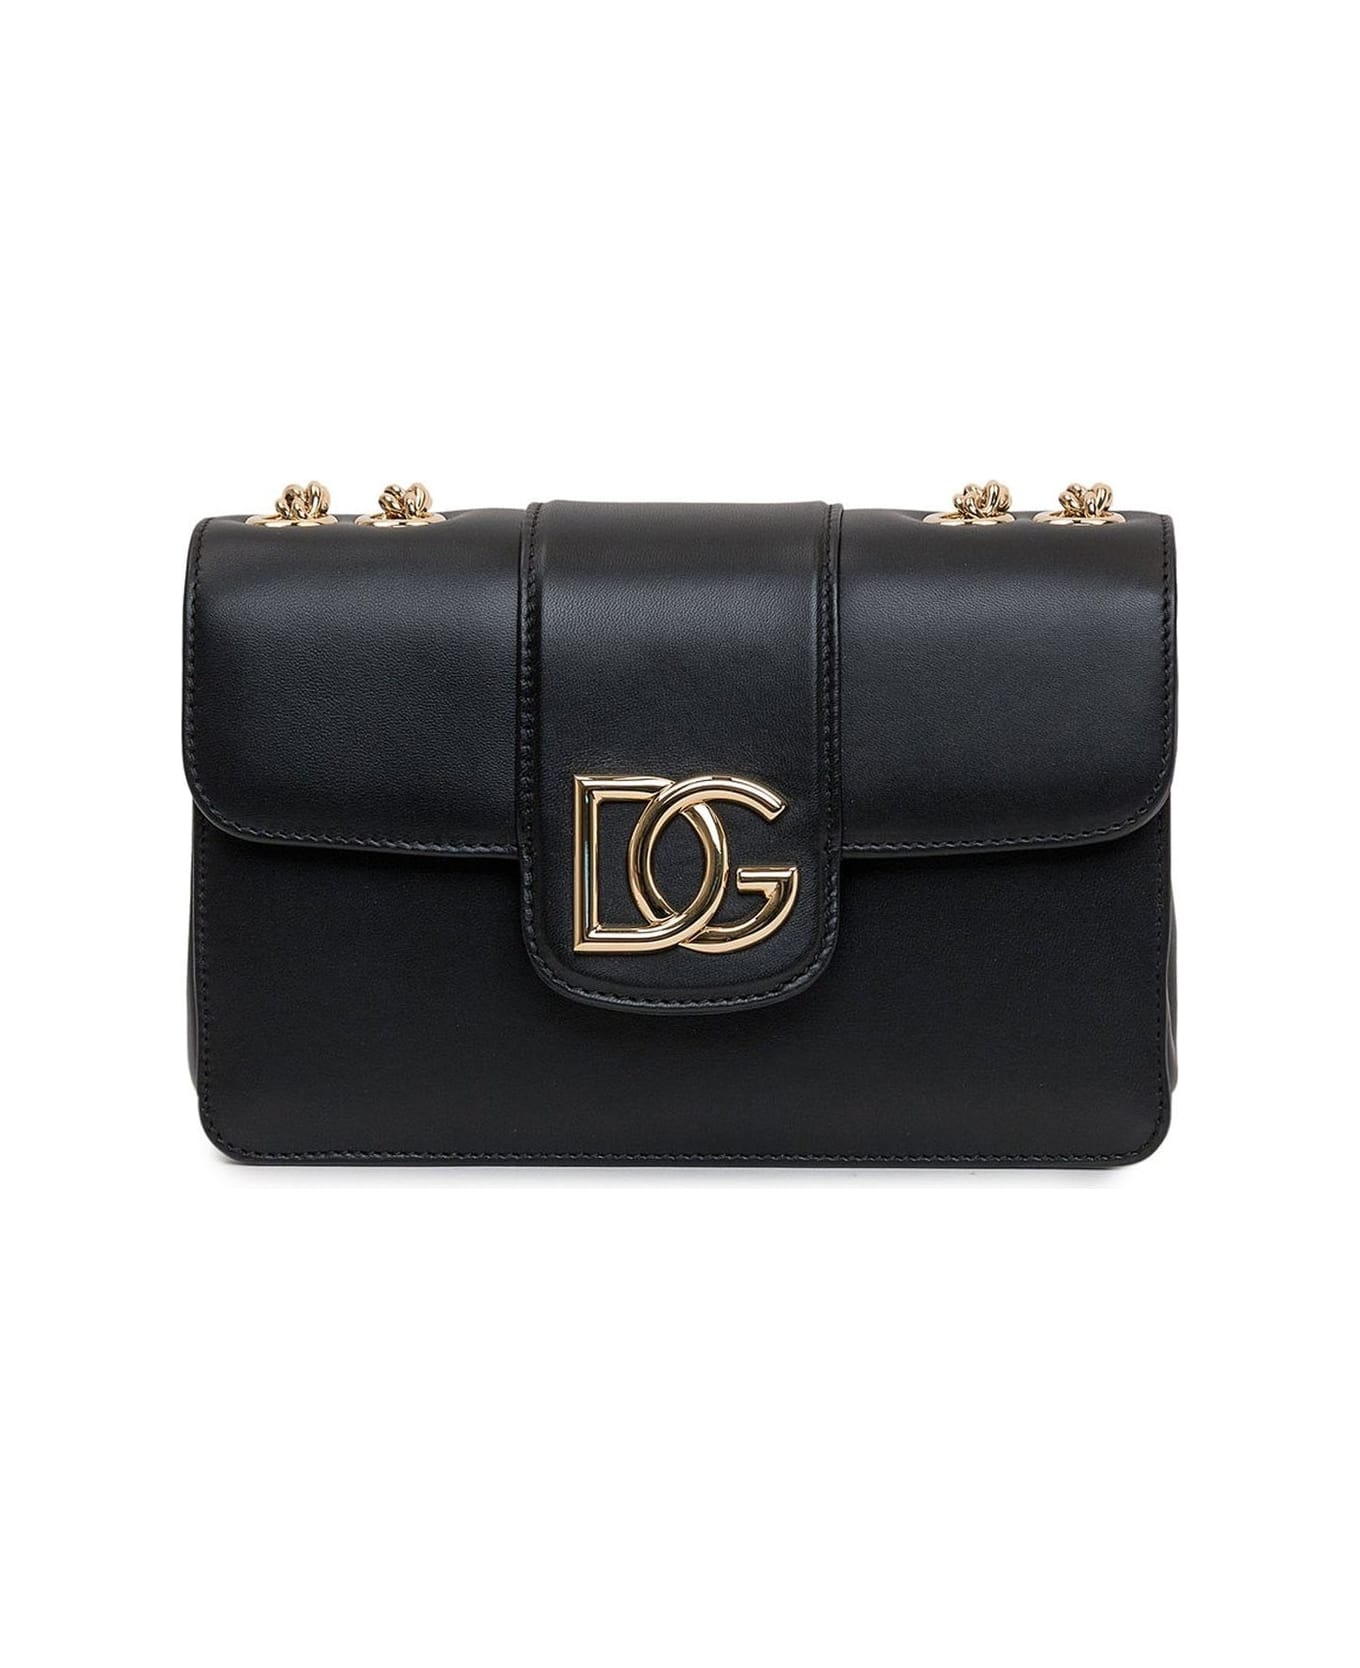 Dolce & Gabbana Leather Shoulder Bag - Black